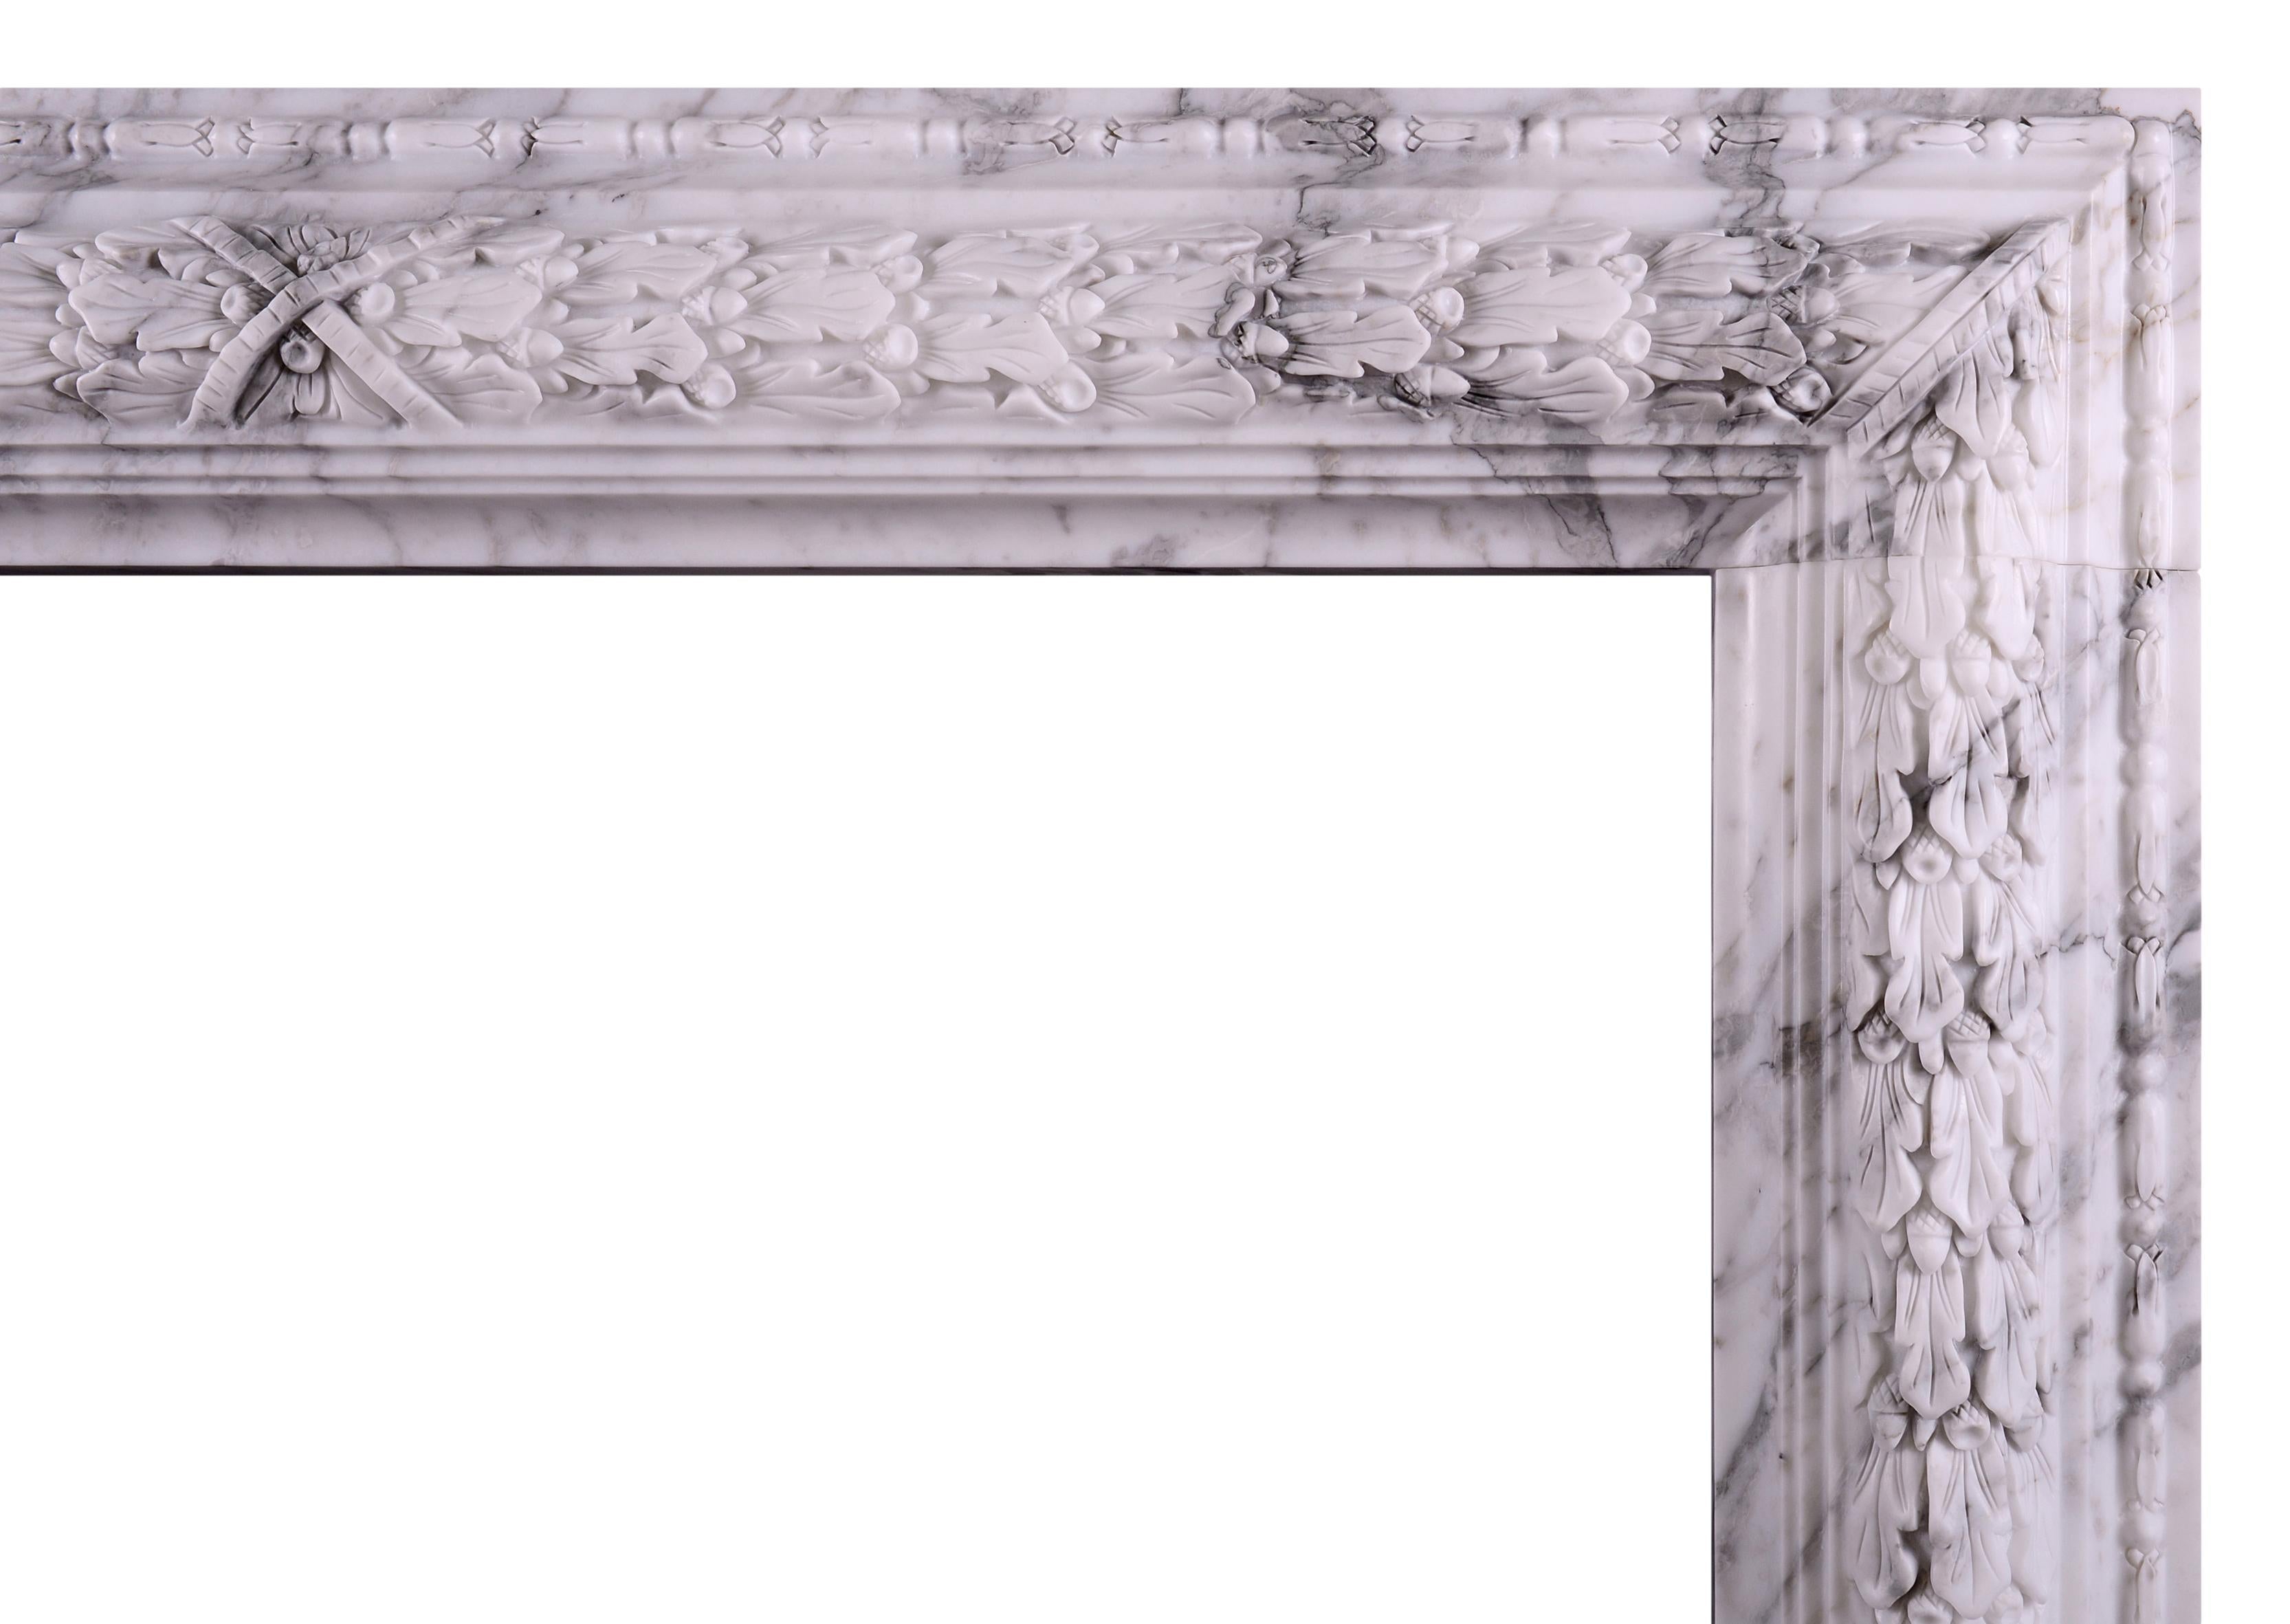 Ein eleganter und unaufdringlicher Kamin aus italienischem Arabescato-Marmor in Biegung. Der Fries mit geschnitztem Eichenlaubdekor und querliegendem Mittelband. Eine Kopie eines historischen Originals. Bei Bedarf können sie in jeder Größe und aus